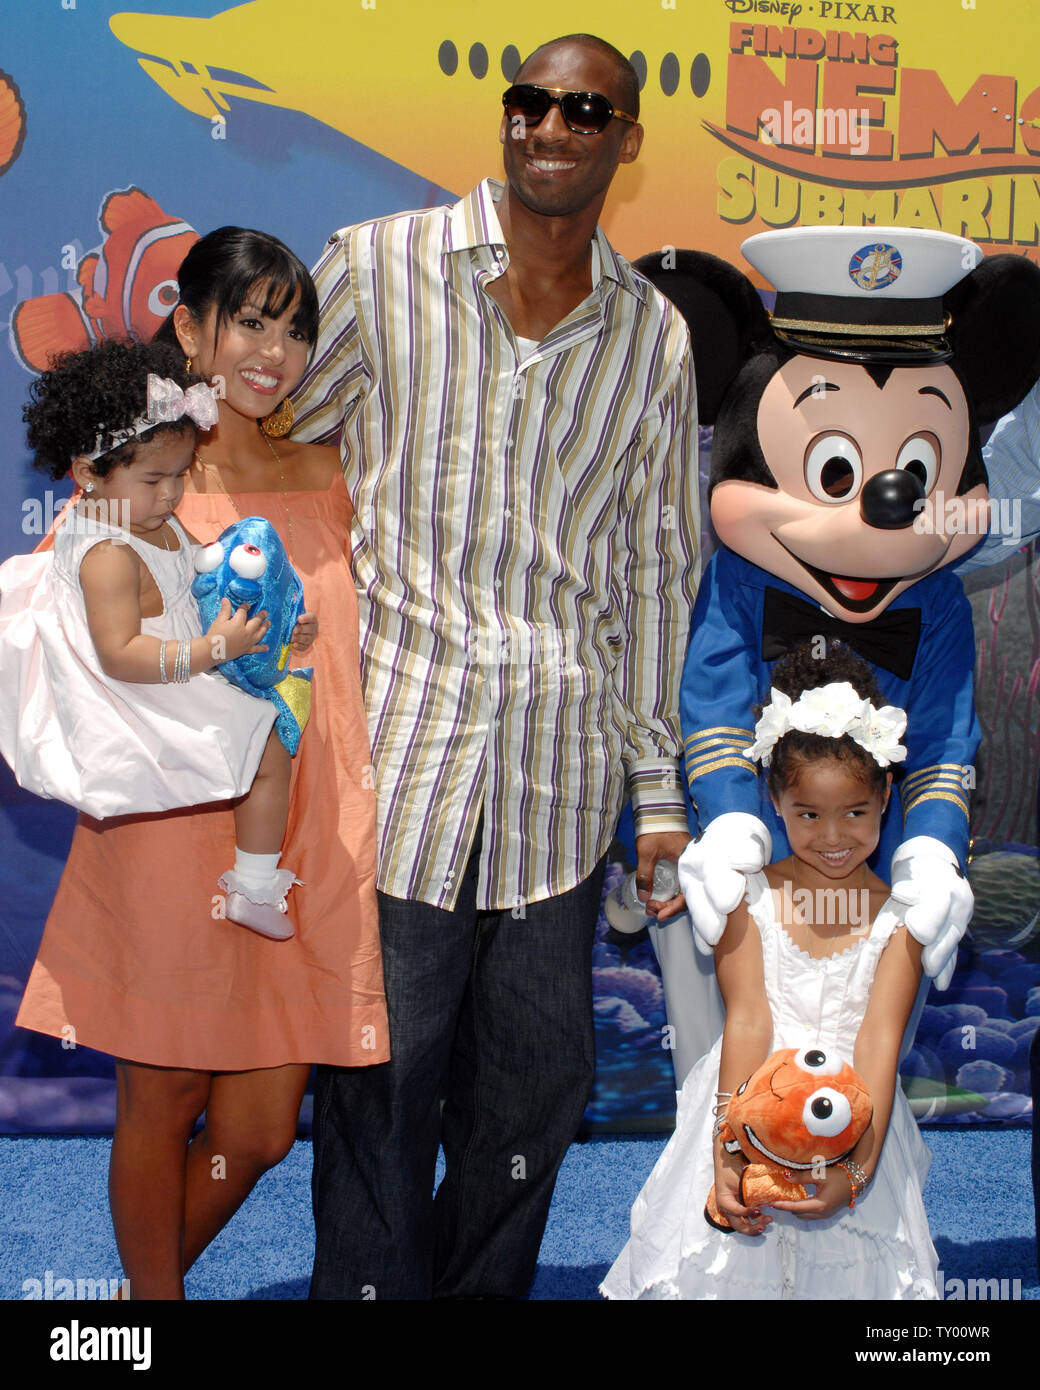 Los Angeles Lakers giocatore di basket Kobe Bryant e sua moglie Vanessa arrivano con le loro figlie Gianna (L) e Natalia per la celebrità anteprima della ricerca di Nemo viaggio sottomarino attrazione a Disneyland Park di Anaheim, in California, il 10 giugno 2007. (UPI foto/Jim Ruymen) Foto Stock